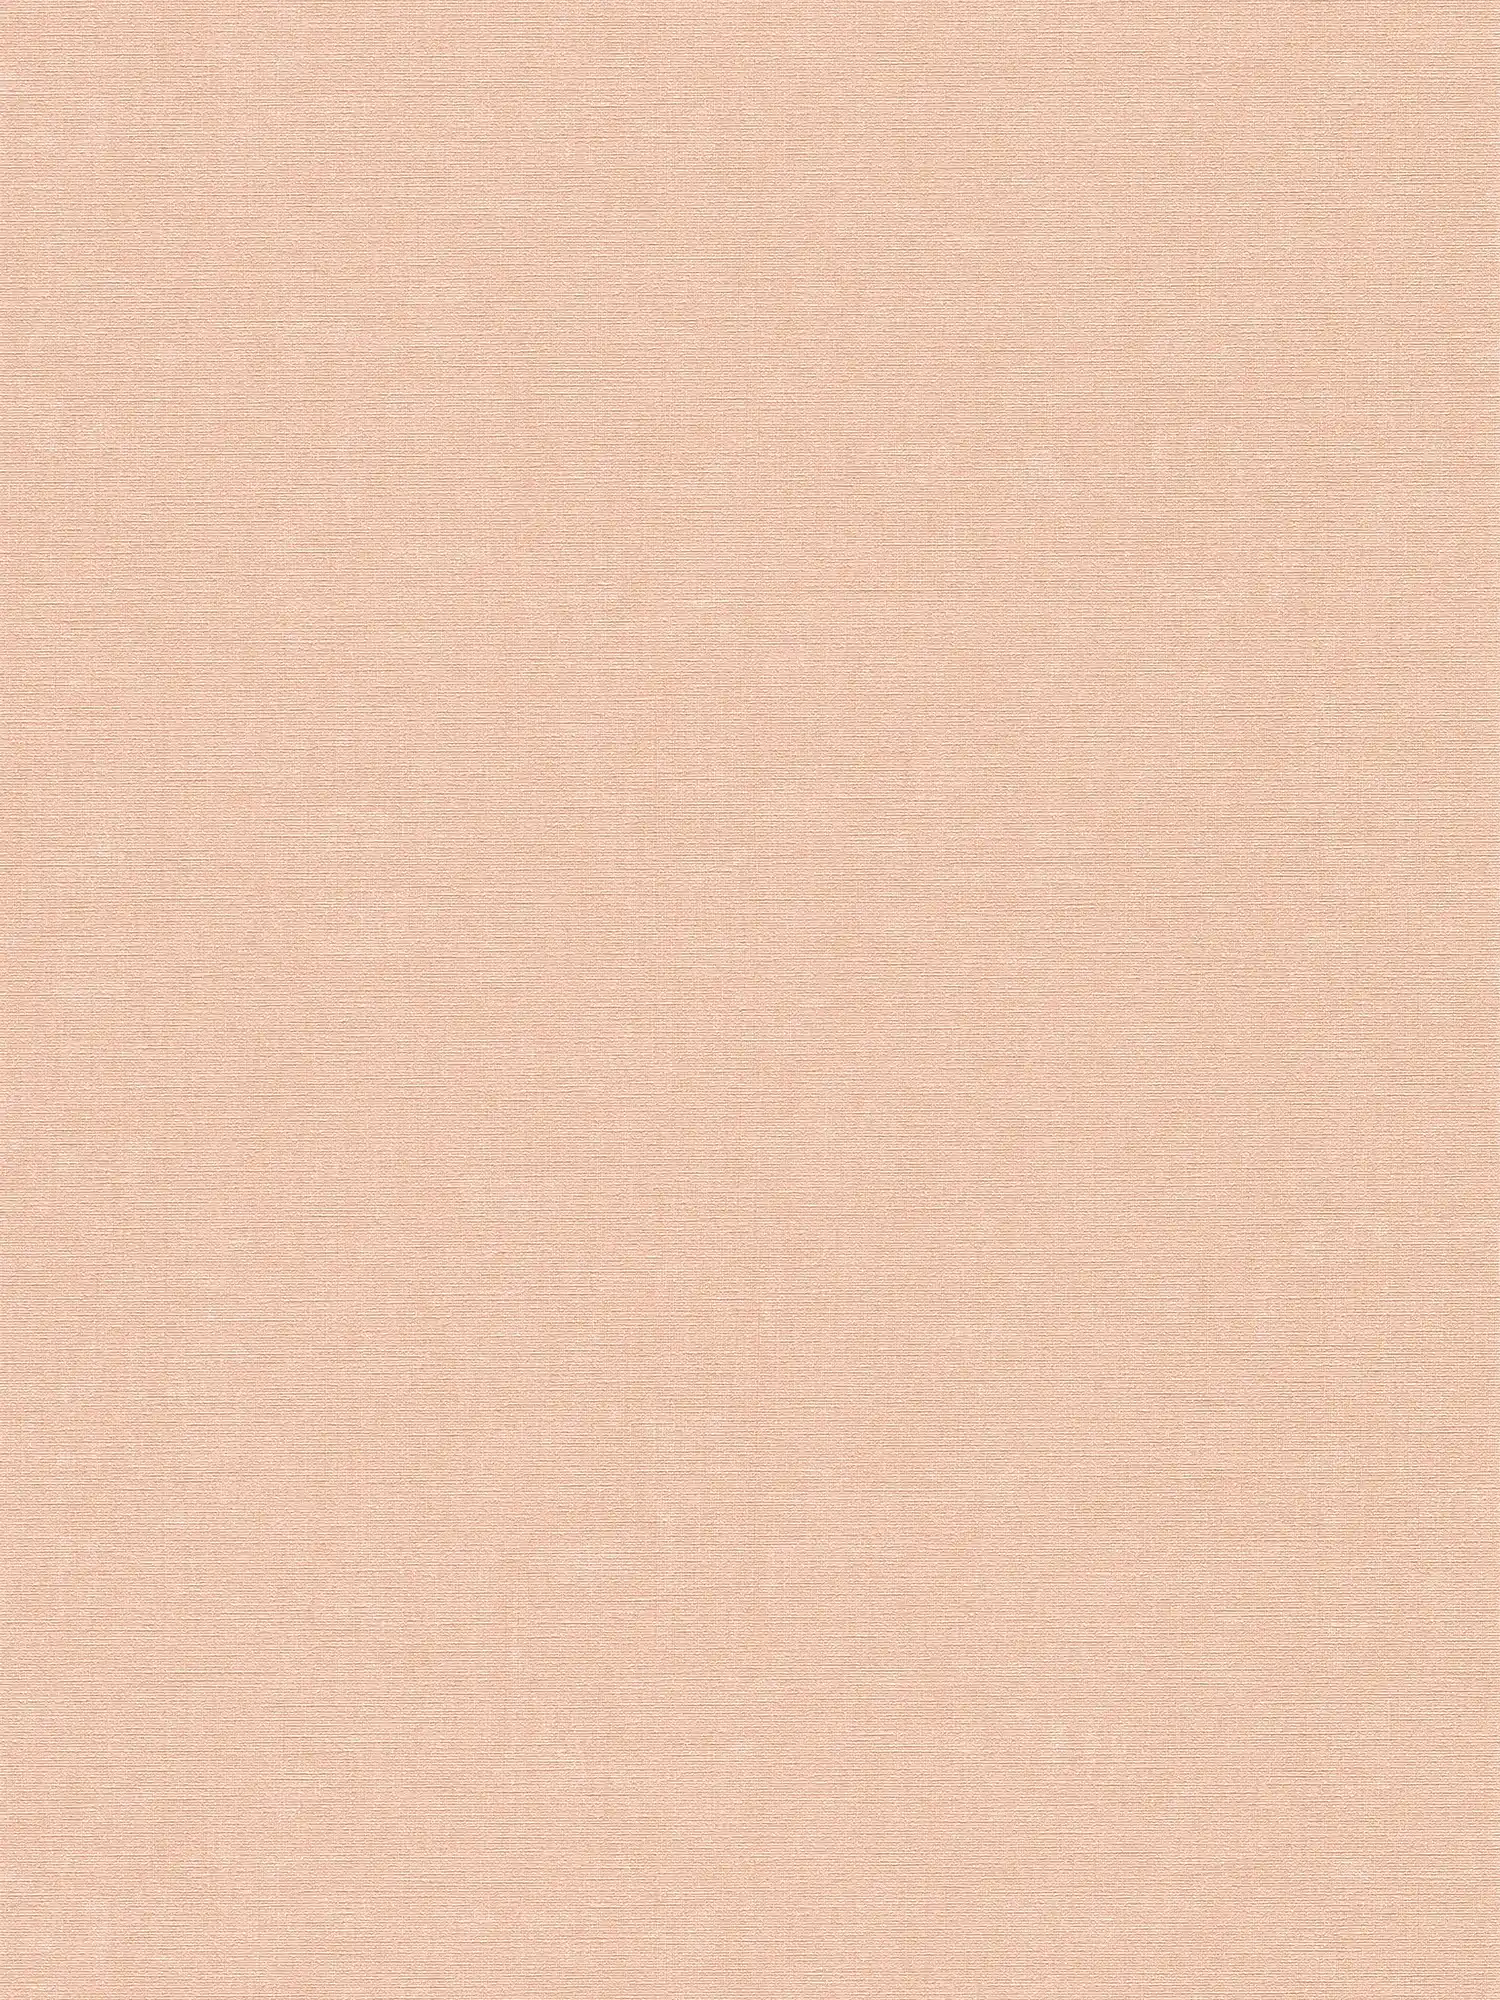 Papier peint rose uni et chiné avec gaufrage structuré
